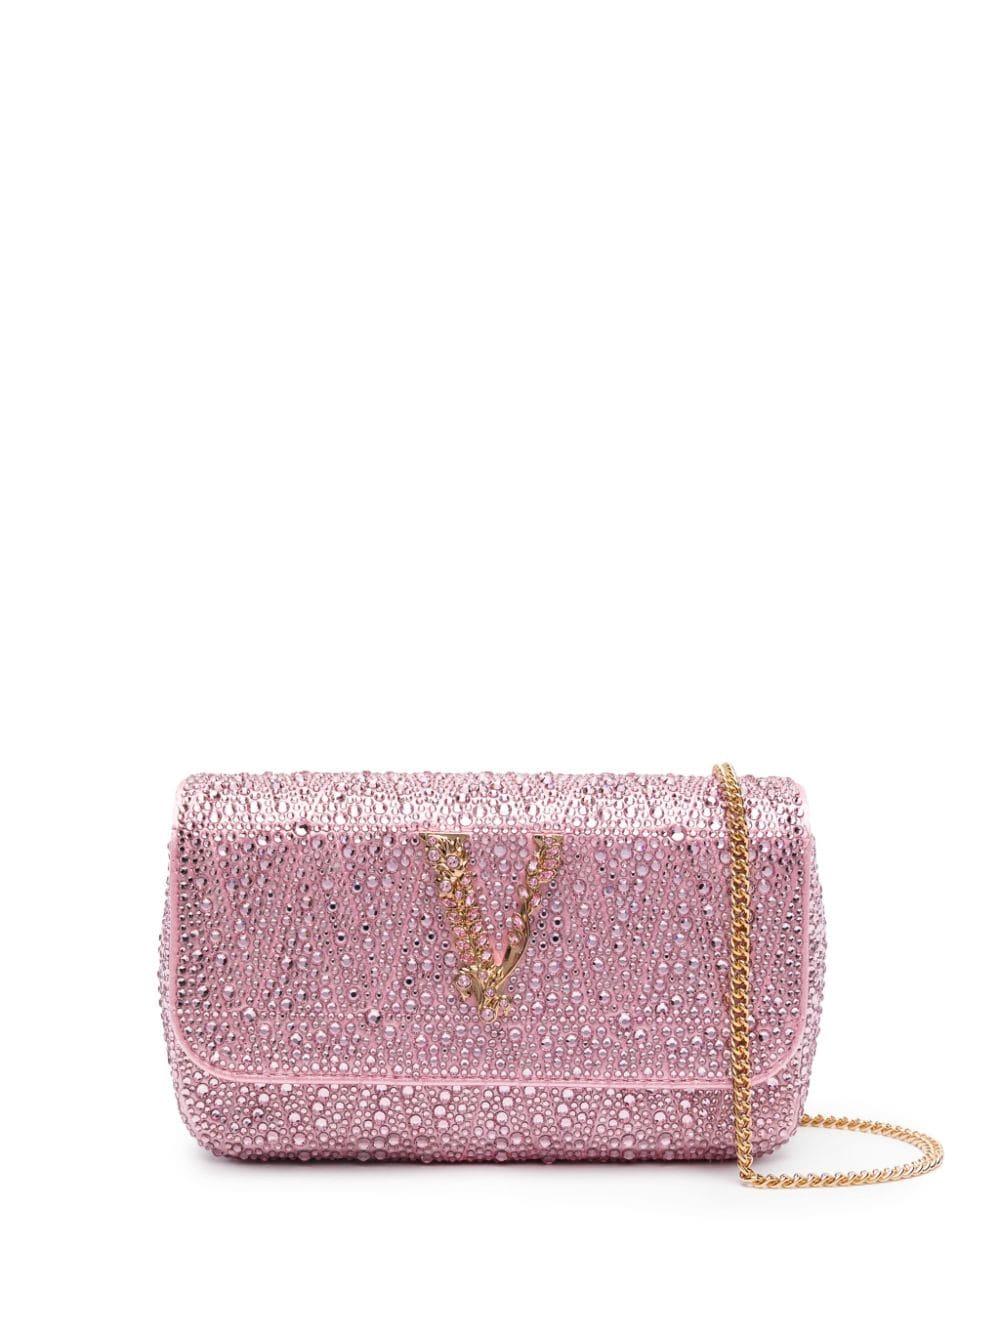 VERSACE Virtus Small Leather Shoulder Bag Light Pink